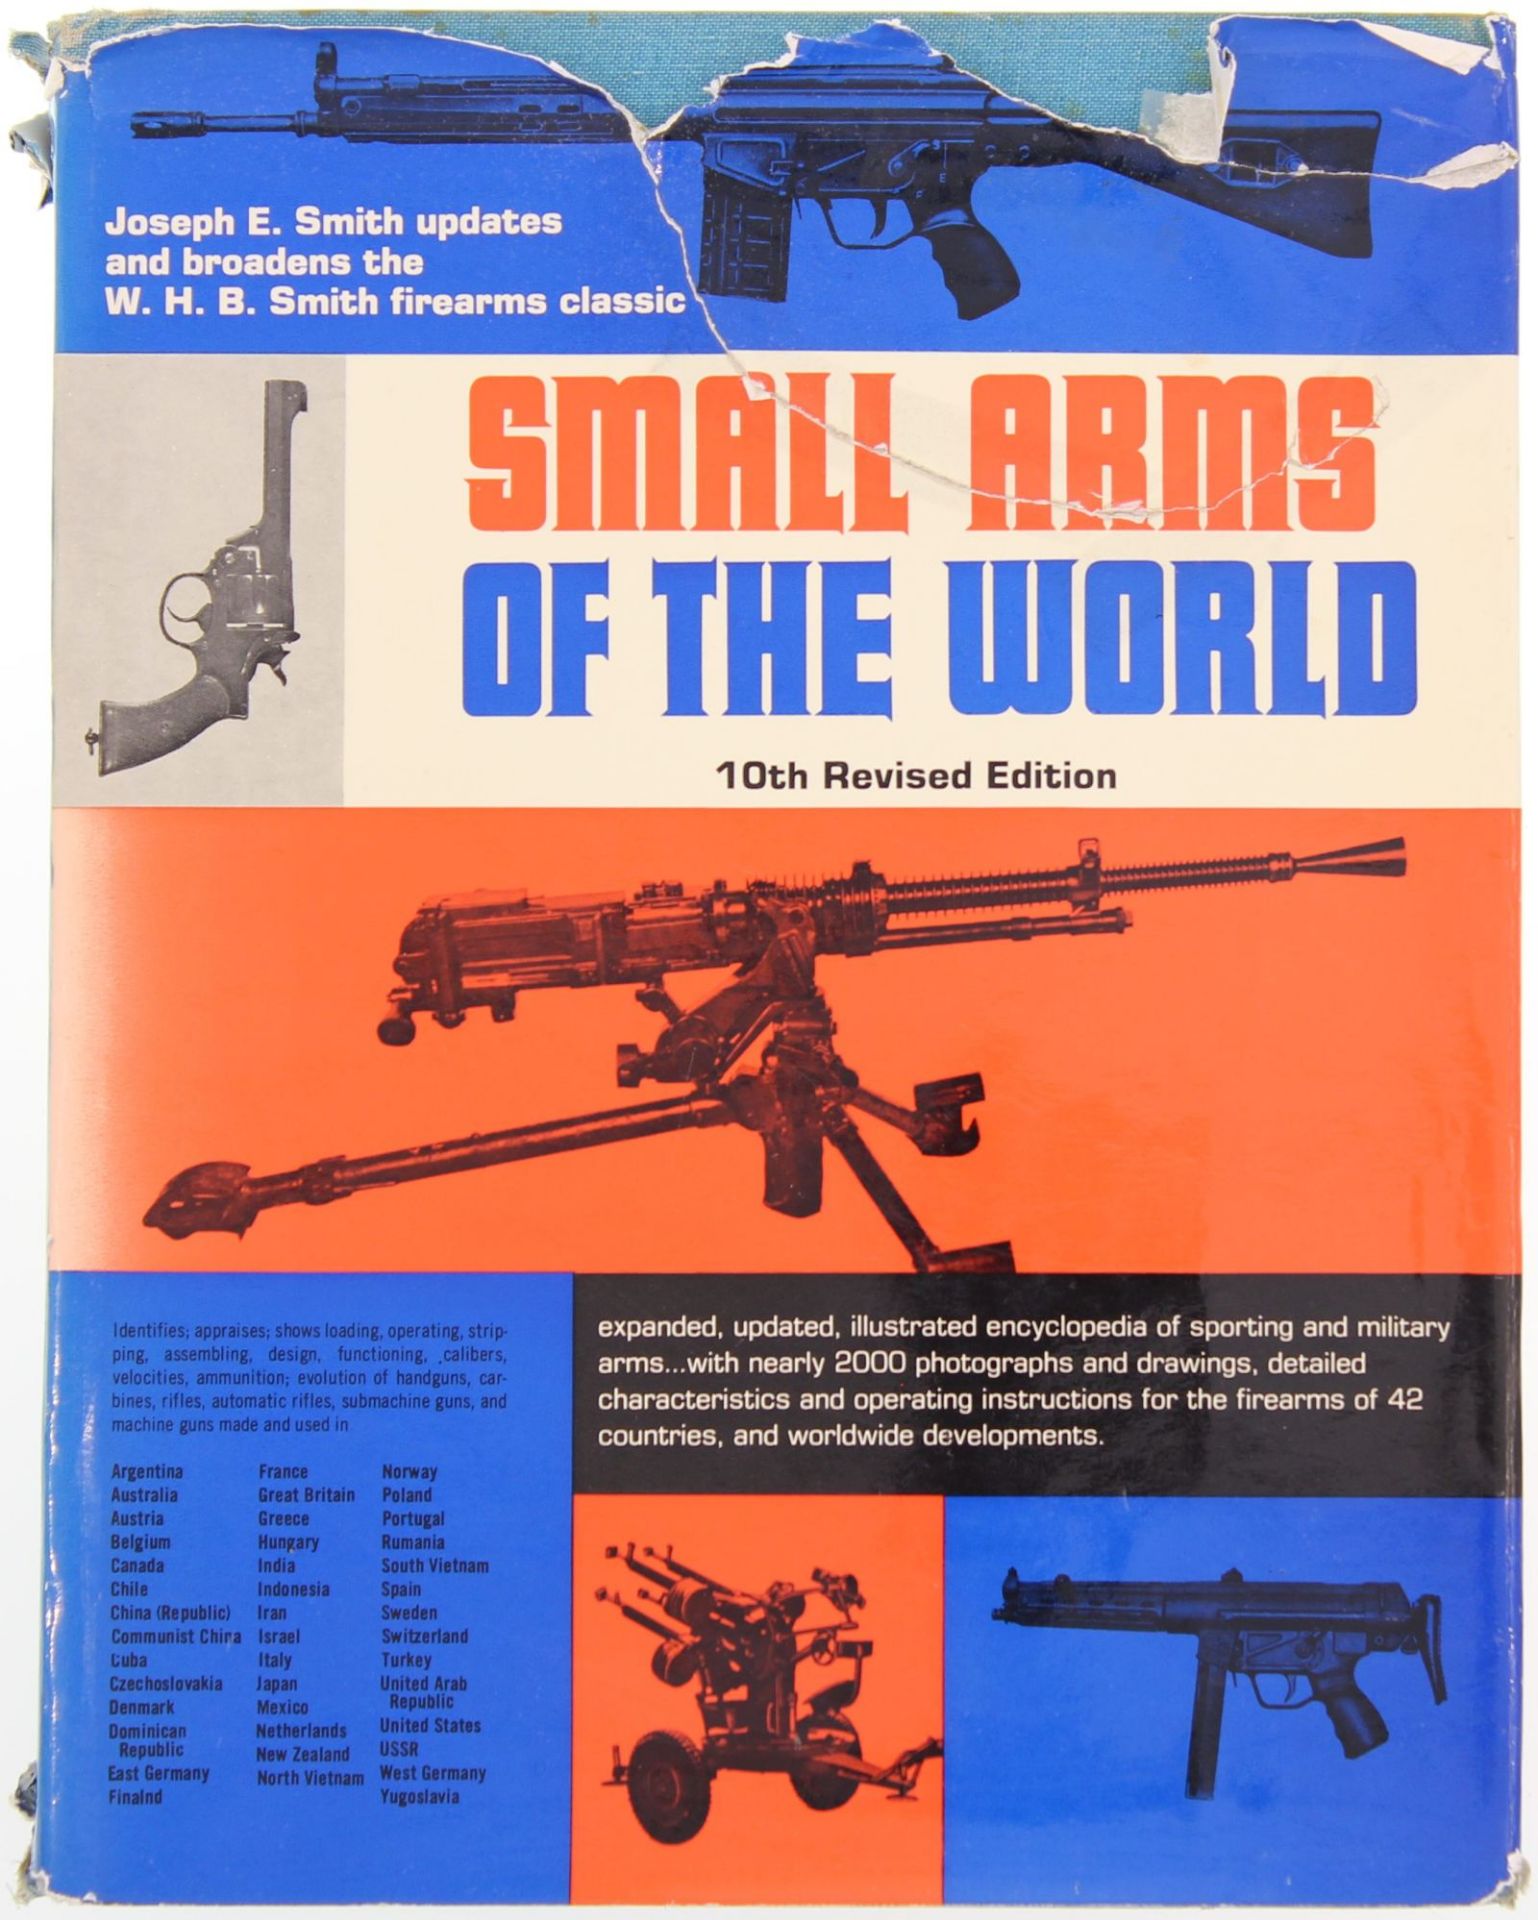 Buch Small Arms of the World von W.H.B. Smith. Auflage 1973, Beinhaltet Waffentechnische